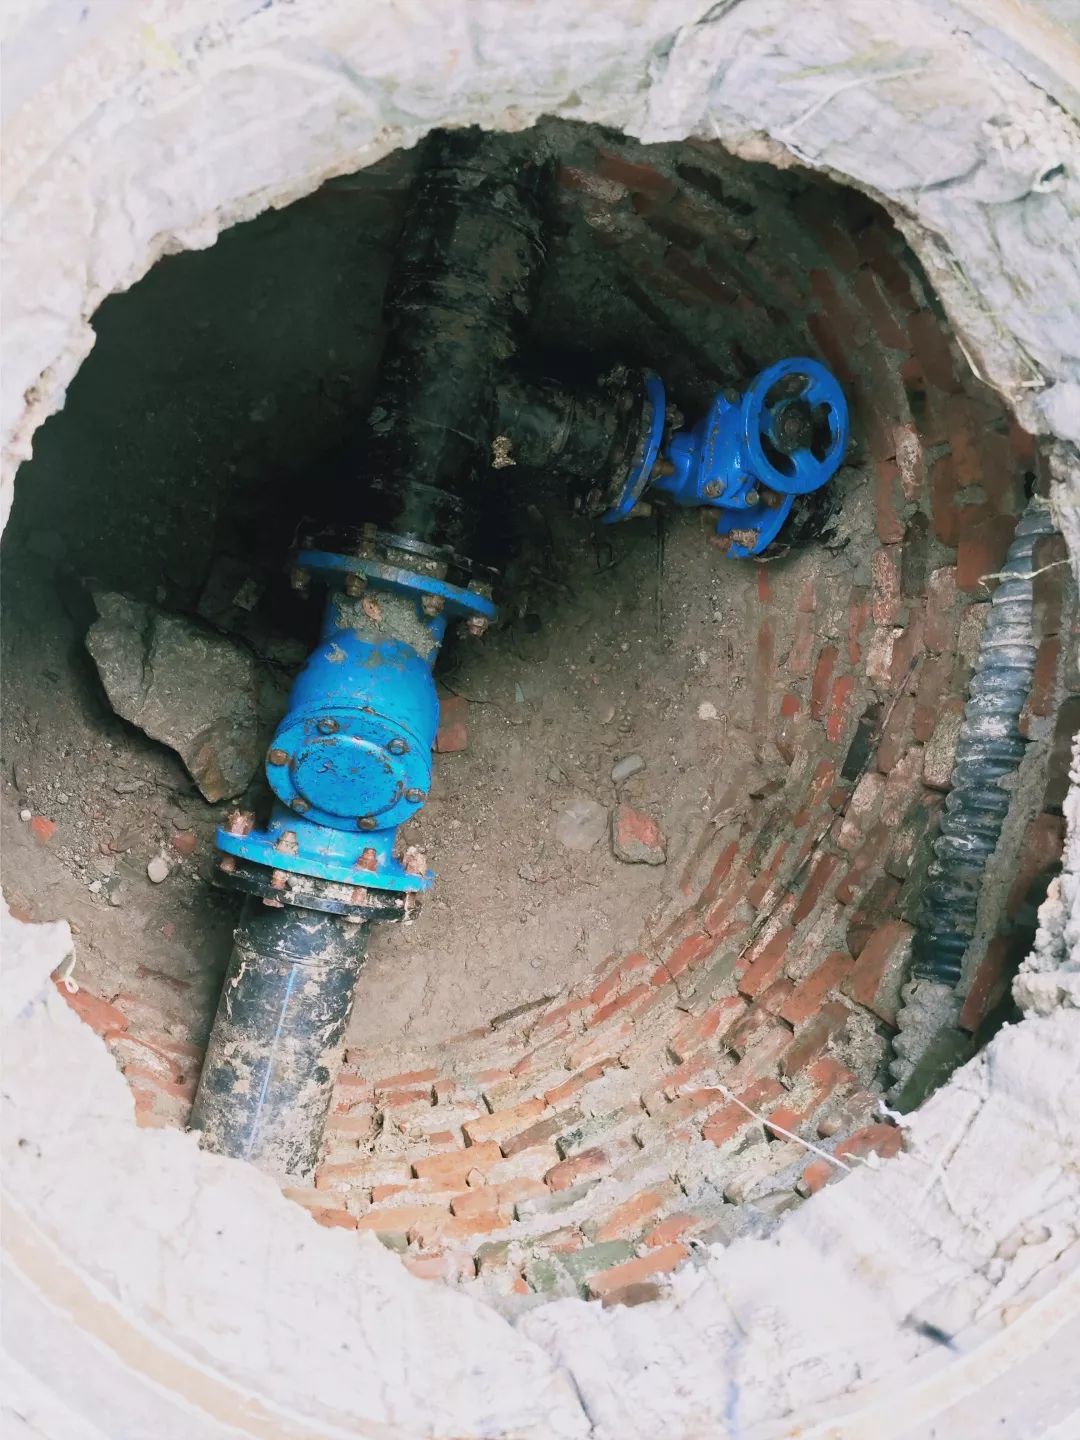 为了解决居民的用水问题,供水公司修建了排泥井,定期对供水管网进行排